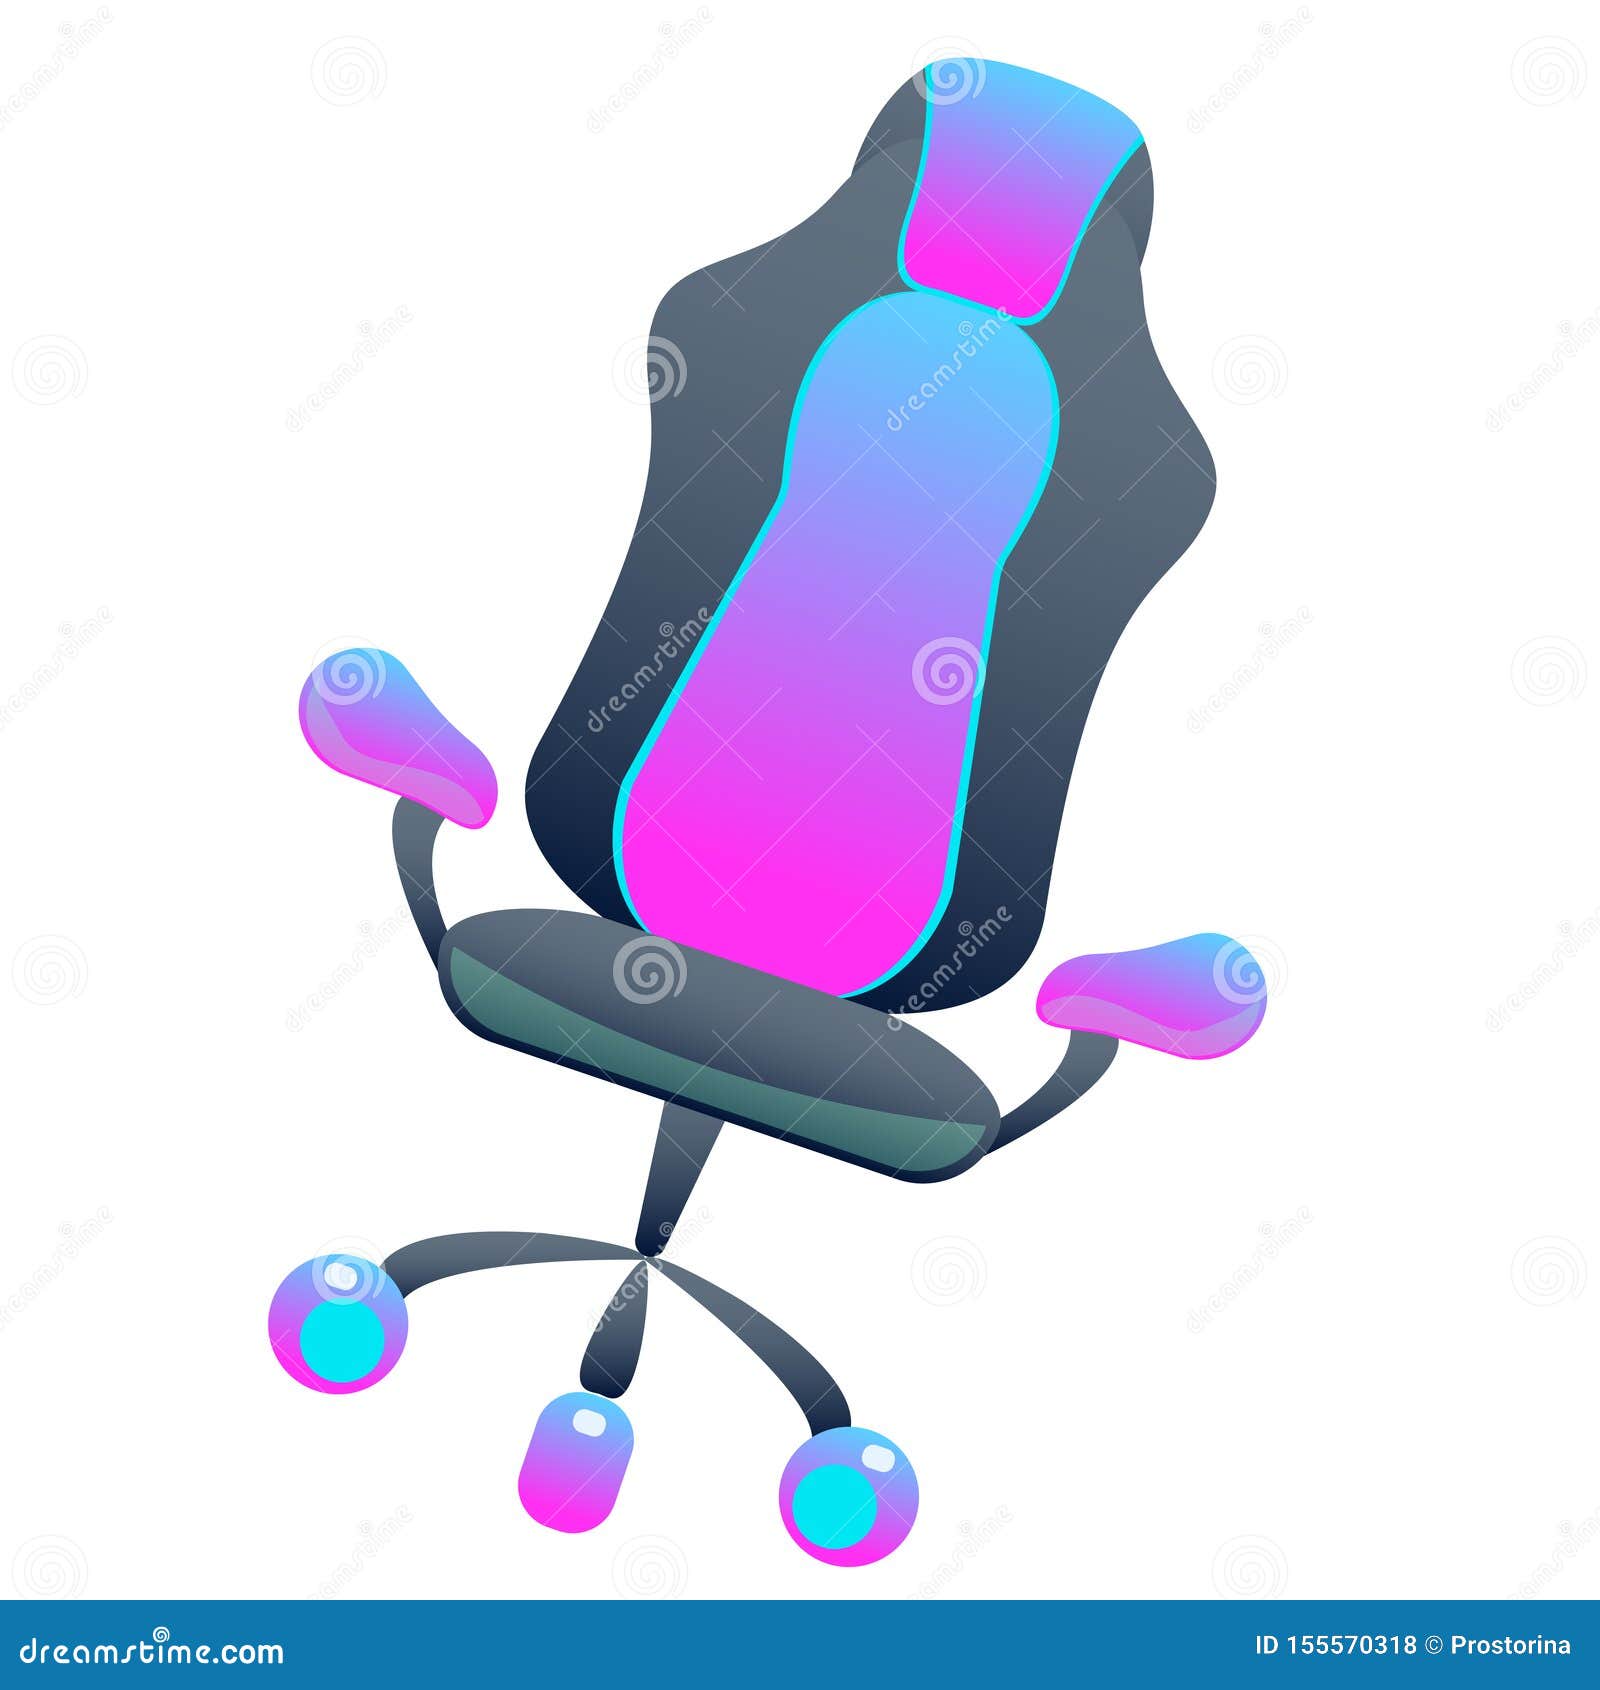 Đúng như tên gọi, chiếc ghế gaming đen trên nền trắng này truyền tải sự sang trọng và đẳng cấp cho người dùng. Thiết kế phẳng sáng sẽ giúp người dùng dễ dàng lựa chọn khi họ muốn trang trí cho không gian game của mình. Hãy khám phá hình ảnh chiếc ghế gaming này để trải nghiệm sự thoải mái và thoải mái khi chơi game.